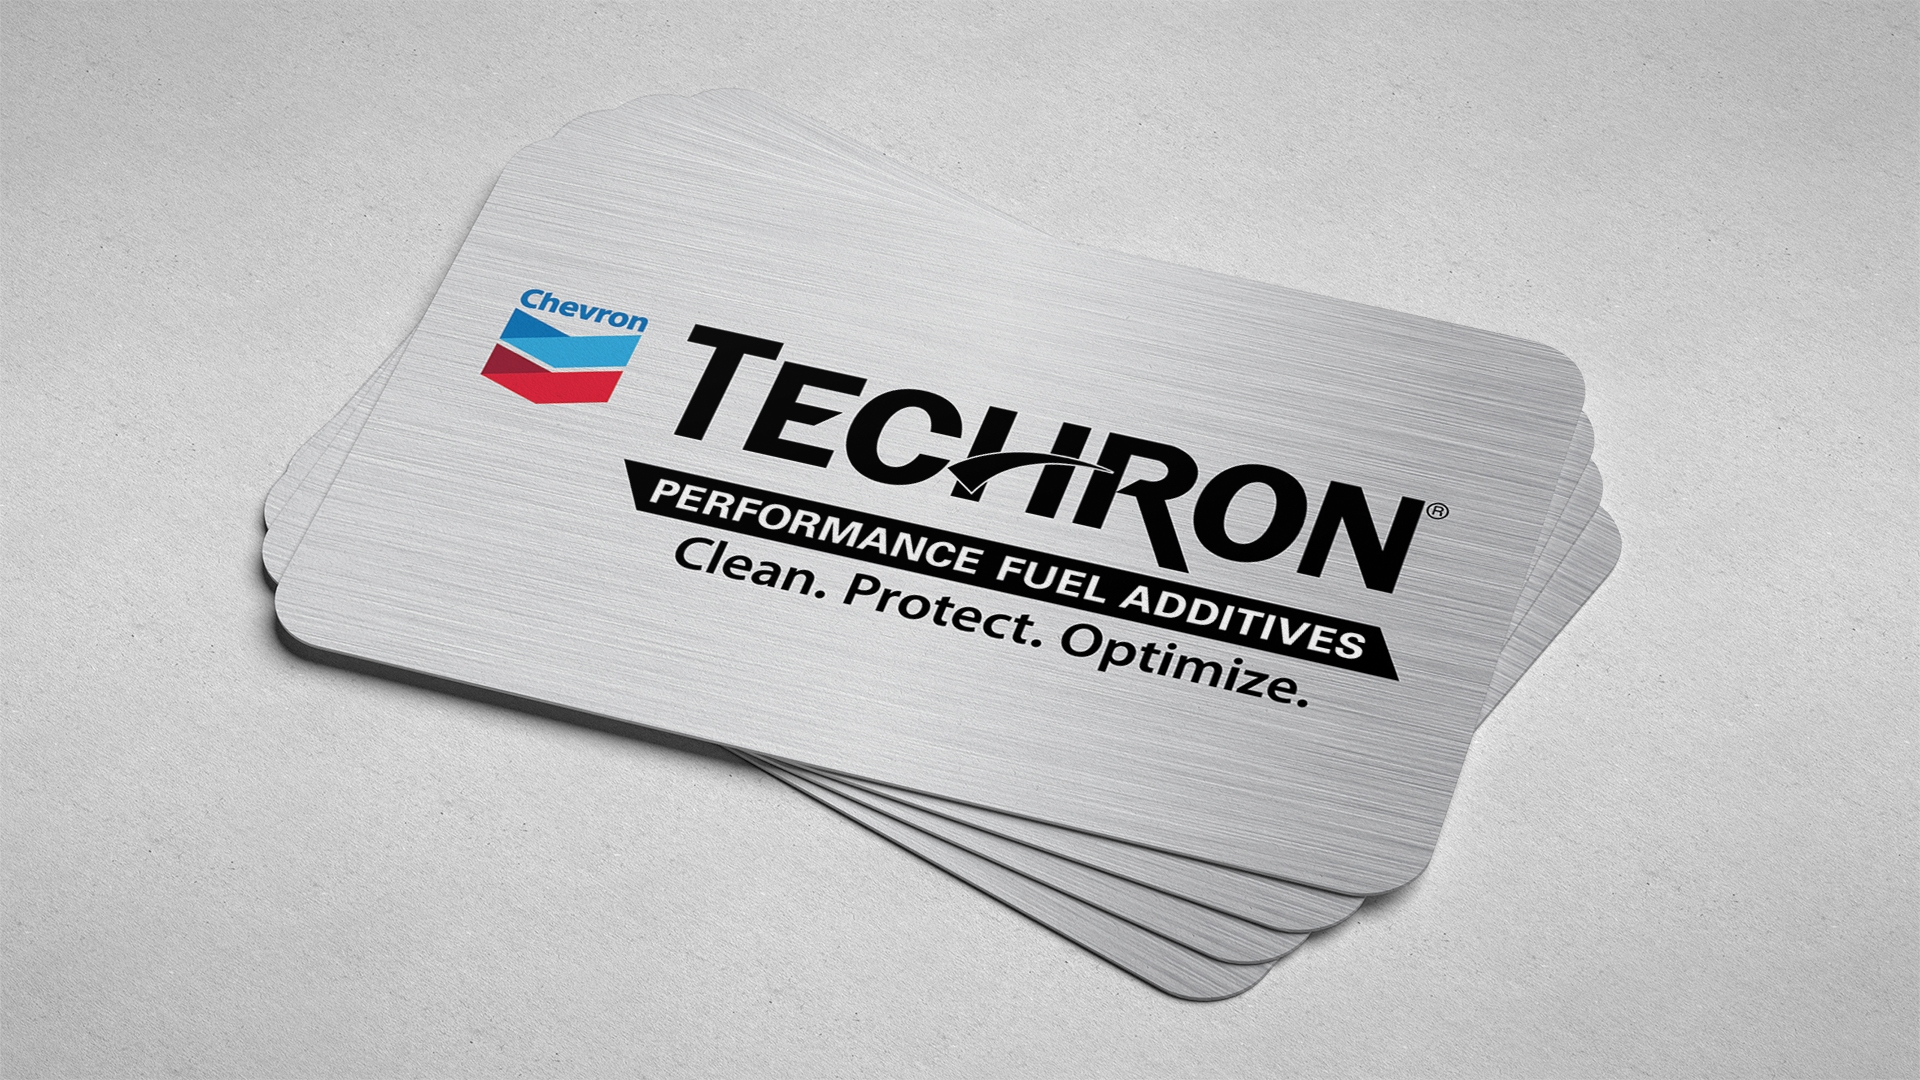 Techron Logo, Descriptor & Positioning on a business card